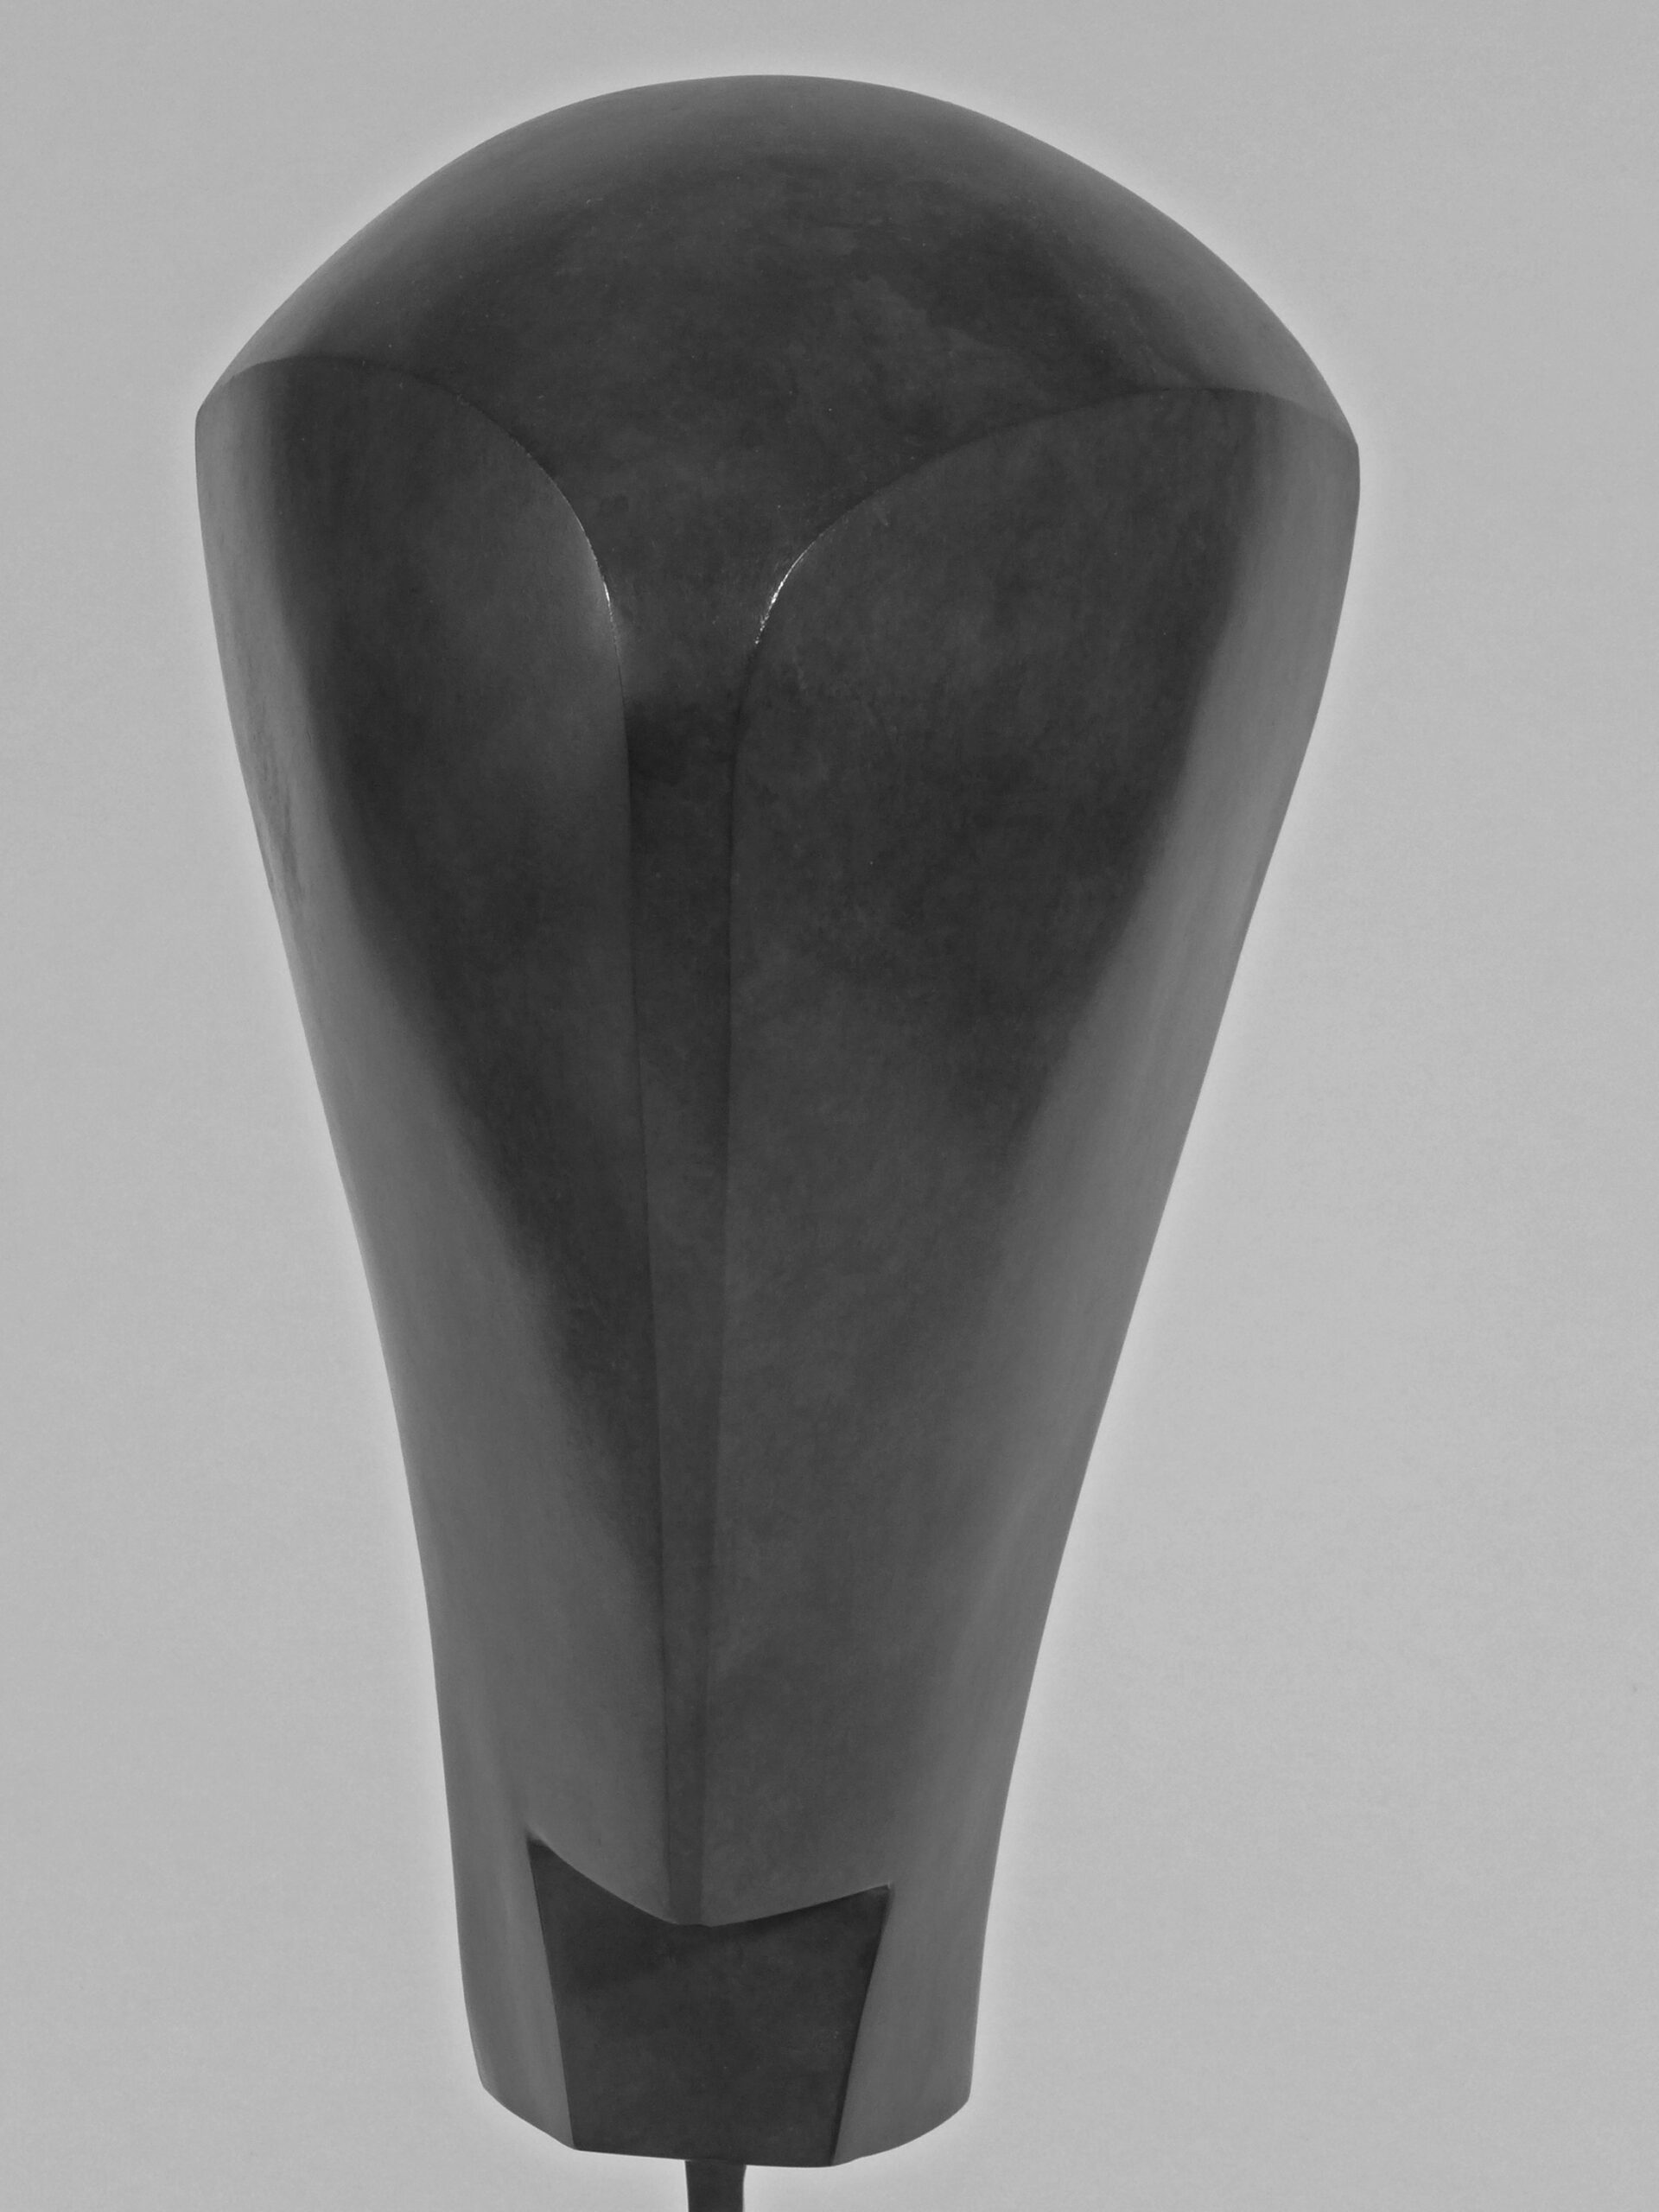 8 La Colère, 1986, bronze, h 64 cm